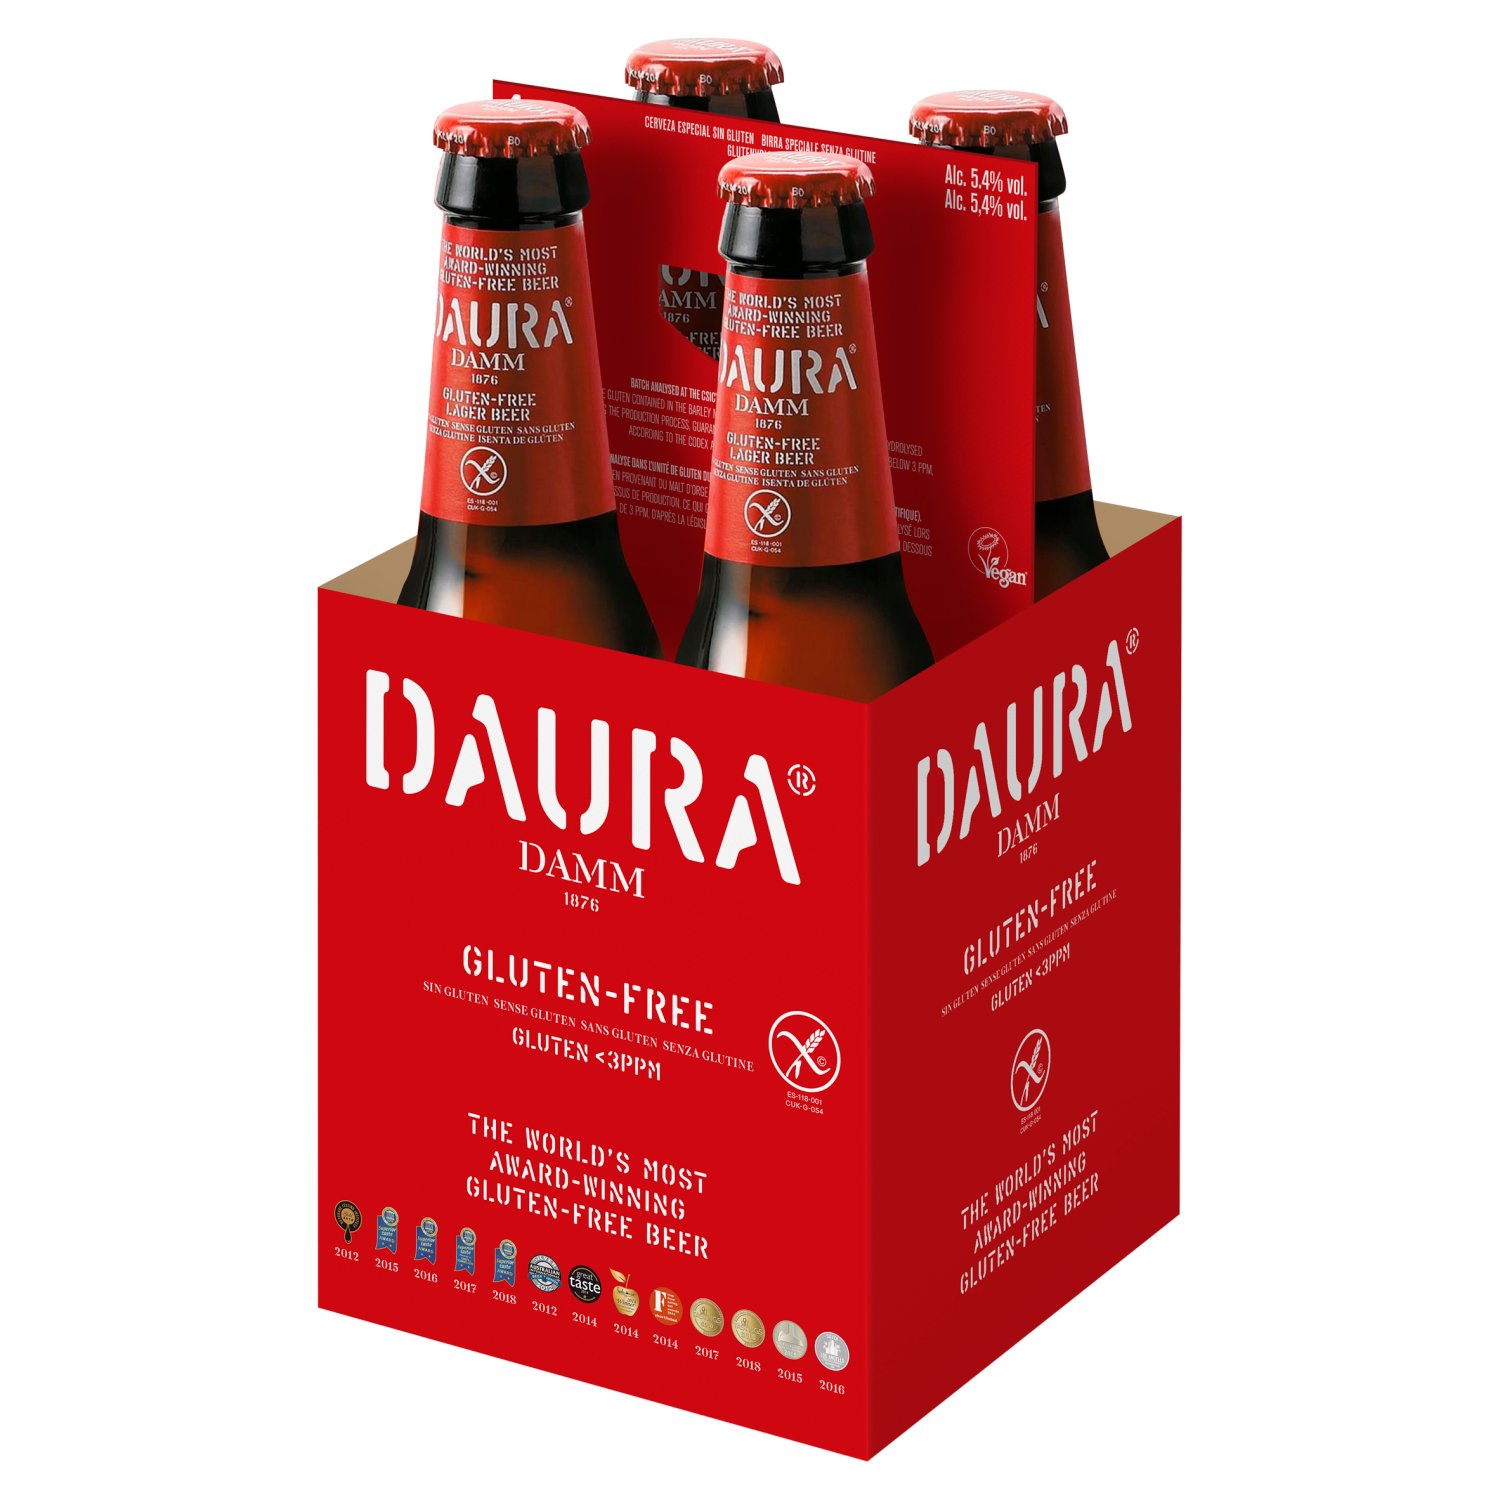 Daura Damm Gluten Free Beer 4 Pack (330 ml)